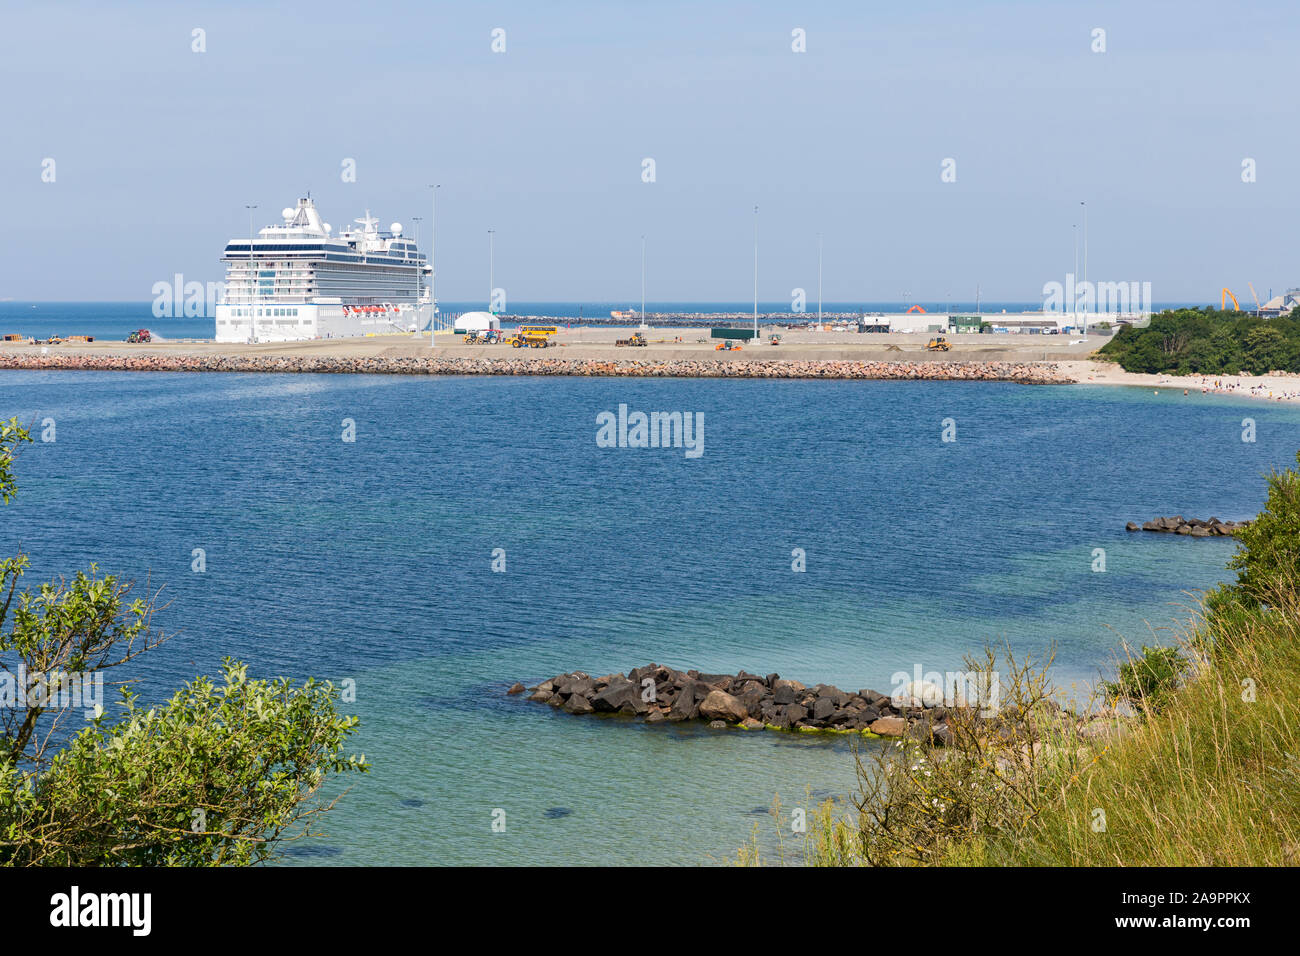 Rønne; Bornholm, Strand, Meer, neuer Hafen, Kreuzfahrtschiff Foto Stock